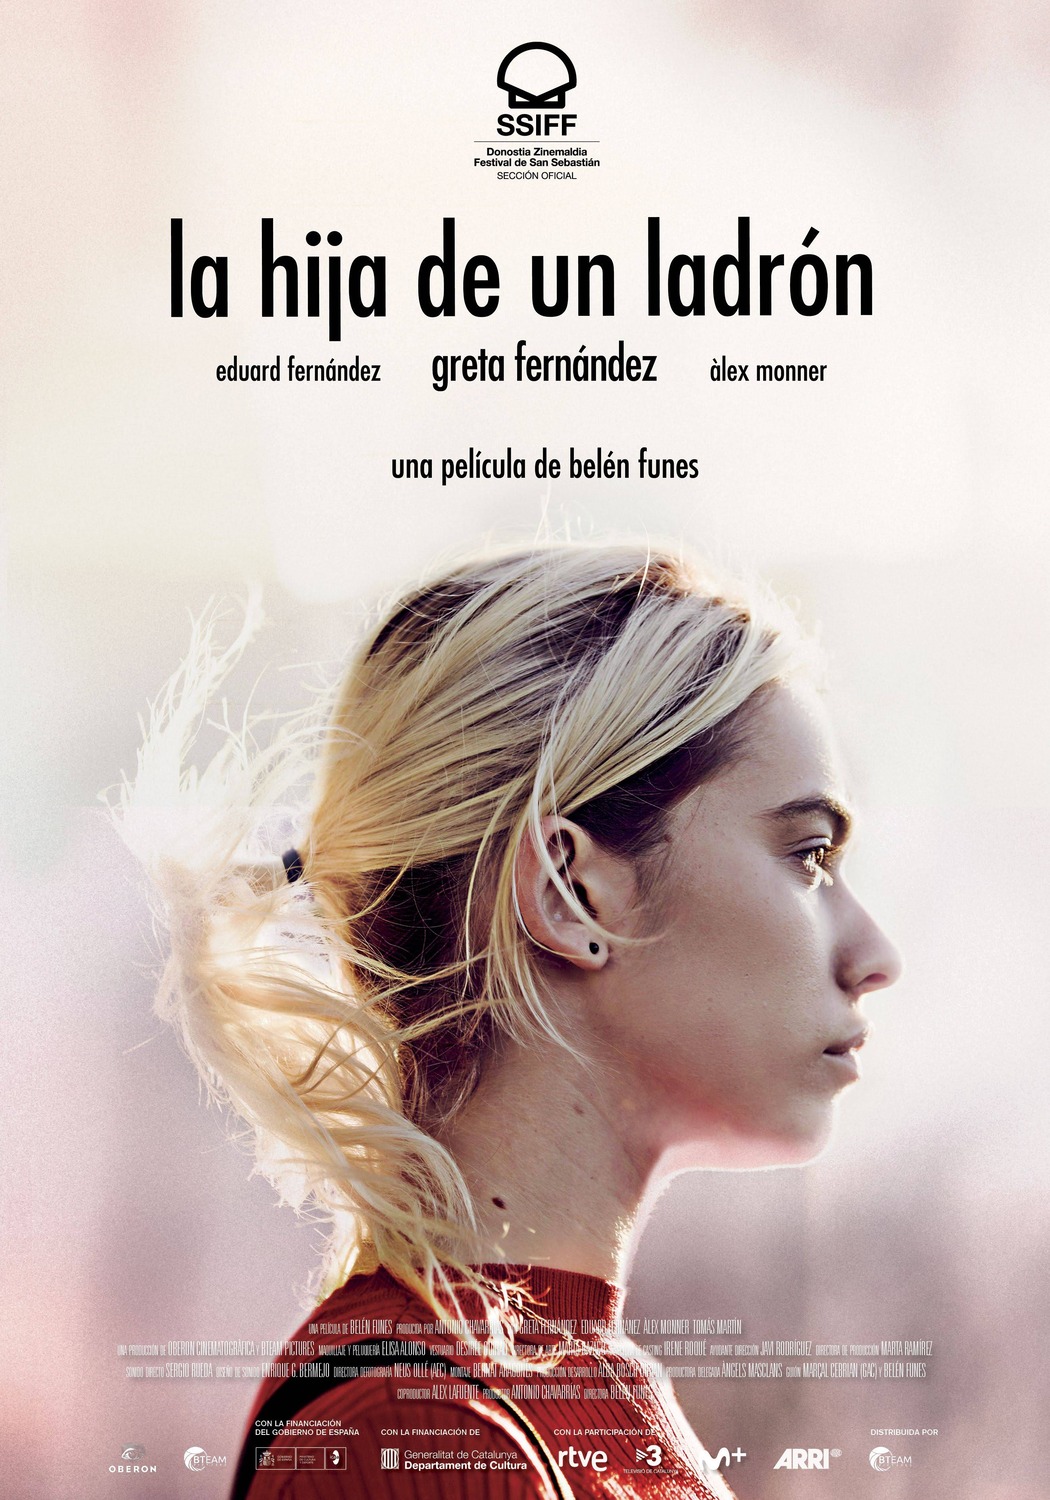 Extra Large Movie Poster Image for La hija de un ladrón (#1 of 2)